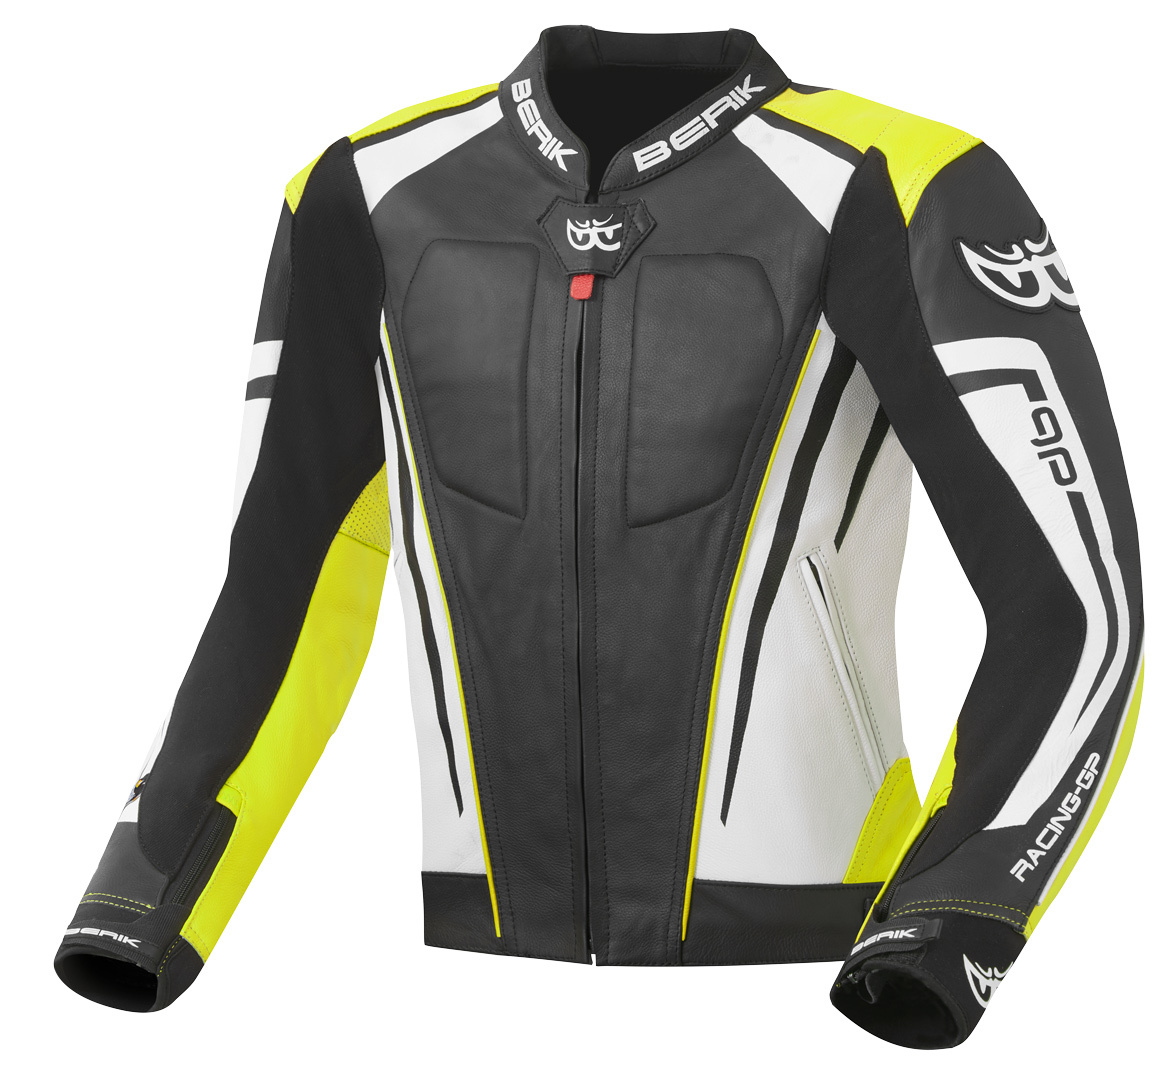 Мотоциклетная кожаная куртка Berik Striper Evo с двойной кожей на локтях и плечах, черный/белый/желтый